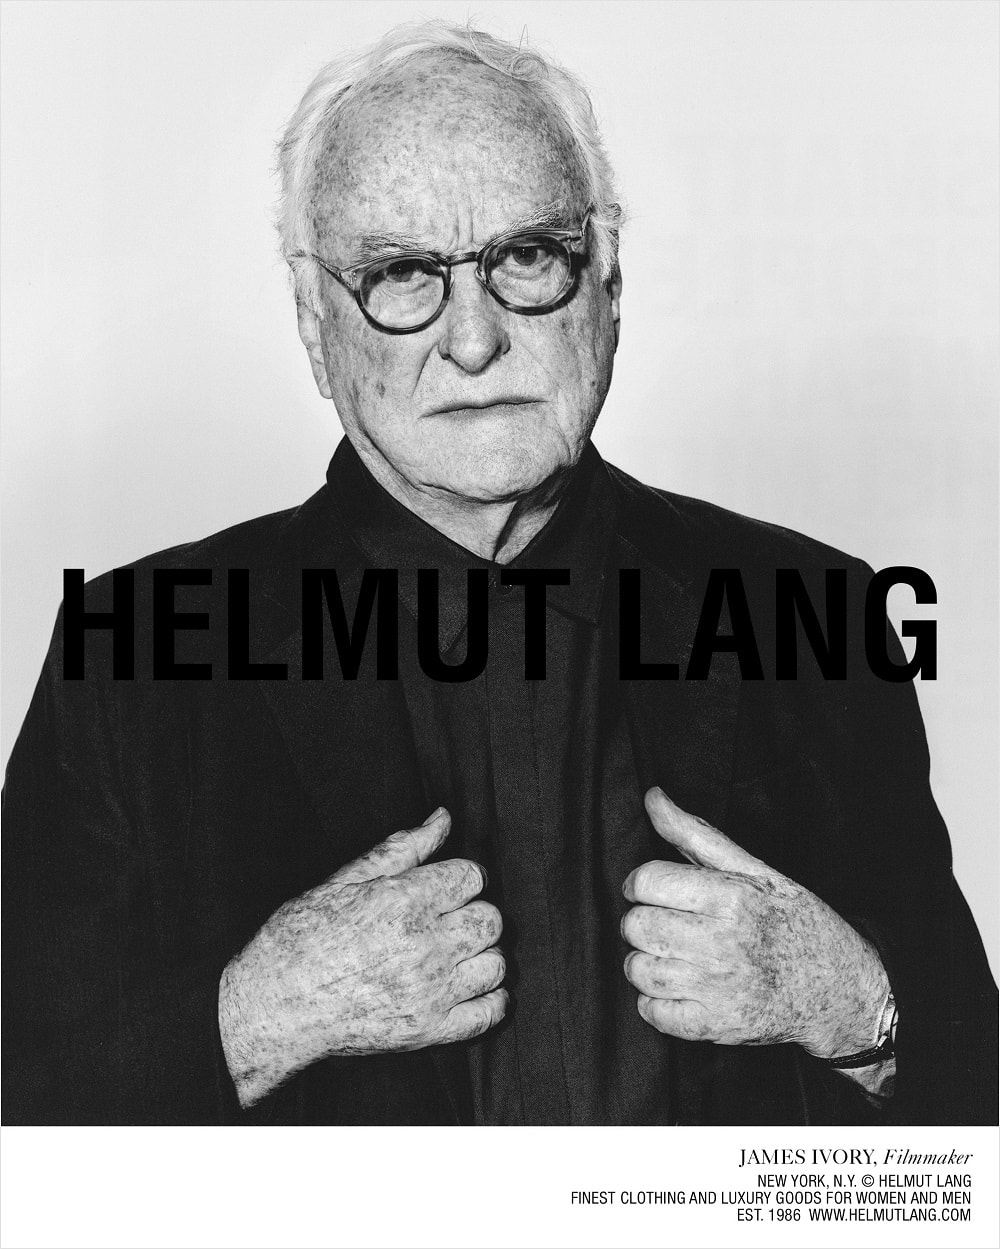 Hero-worshipping Helmut Lang - Telegraph